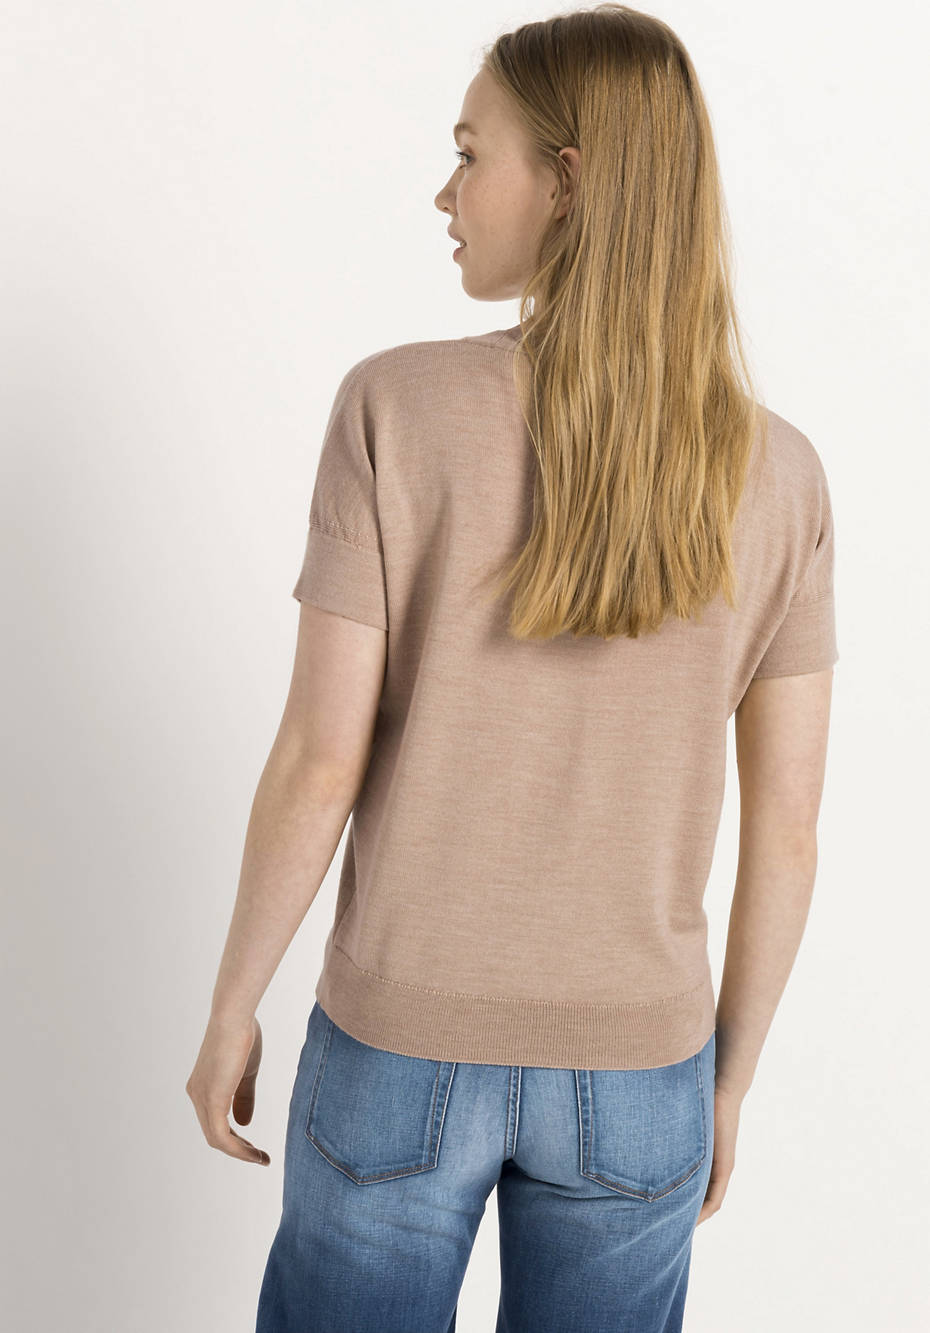 Knit shirt made of pure organic merino wool